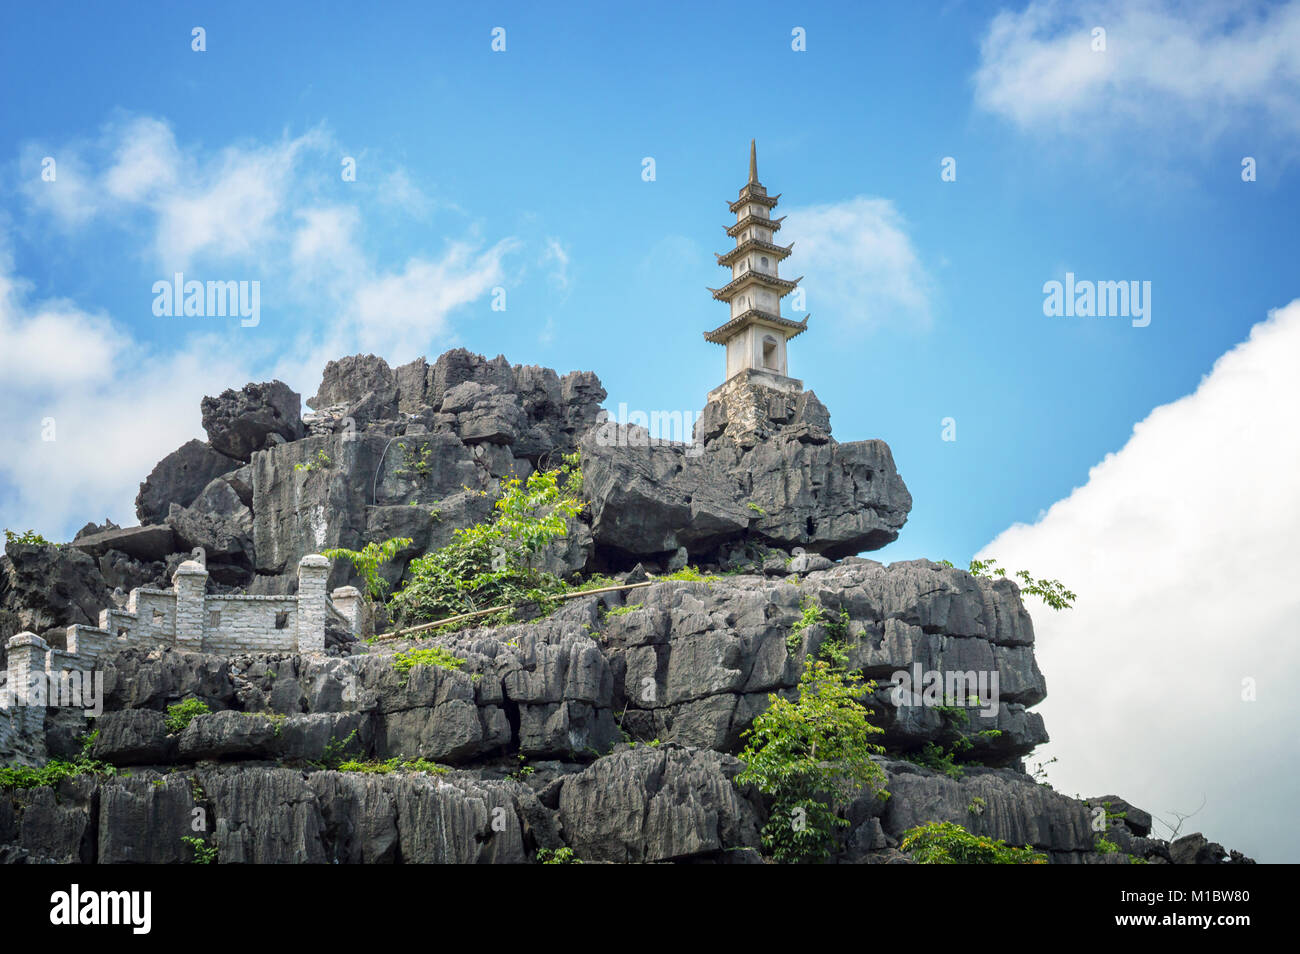 Parte superior de la pagoda de Hang Mua temple, Ninh Binh, Vietnam Foto de stock